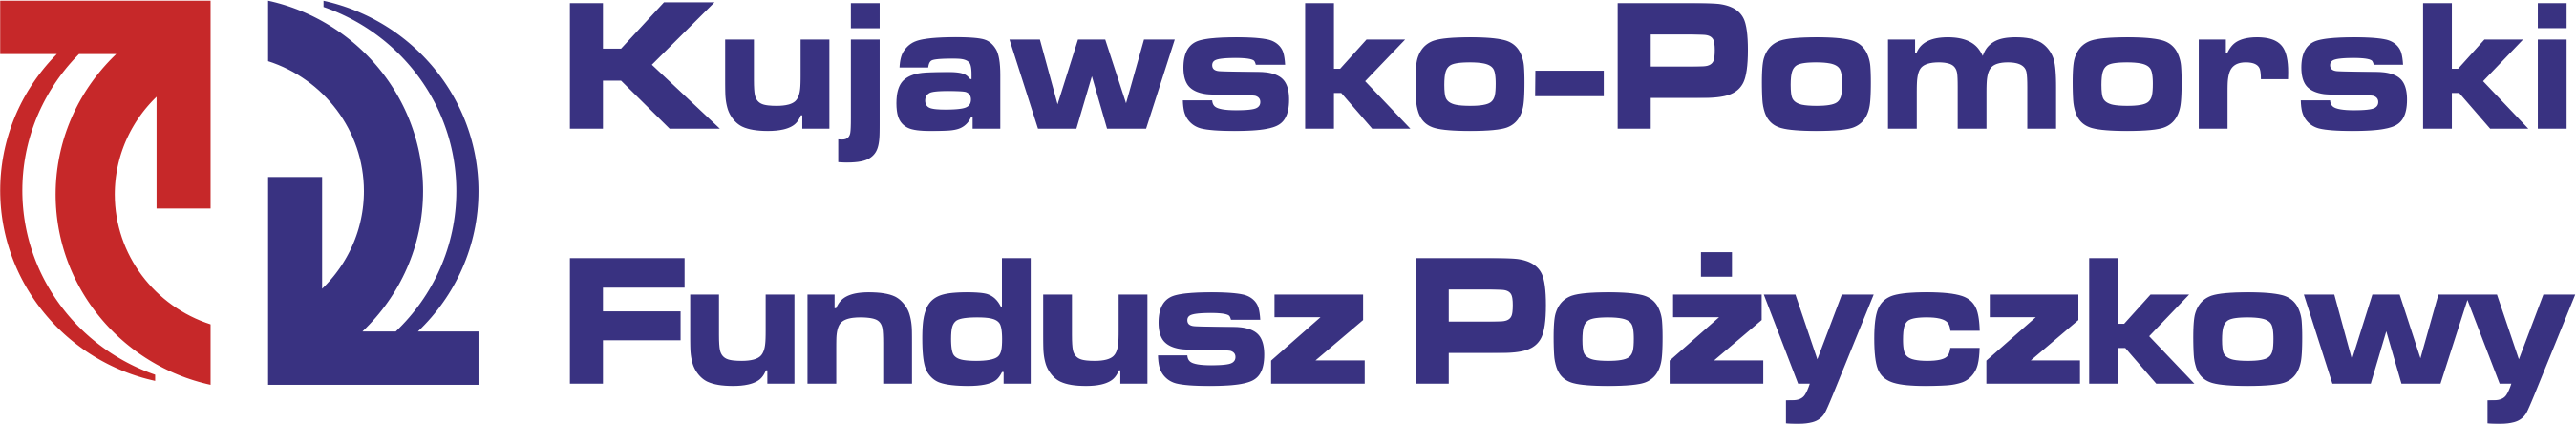 Logo Kujawsko-Pomorskiego Funduszu Pożyczkowego